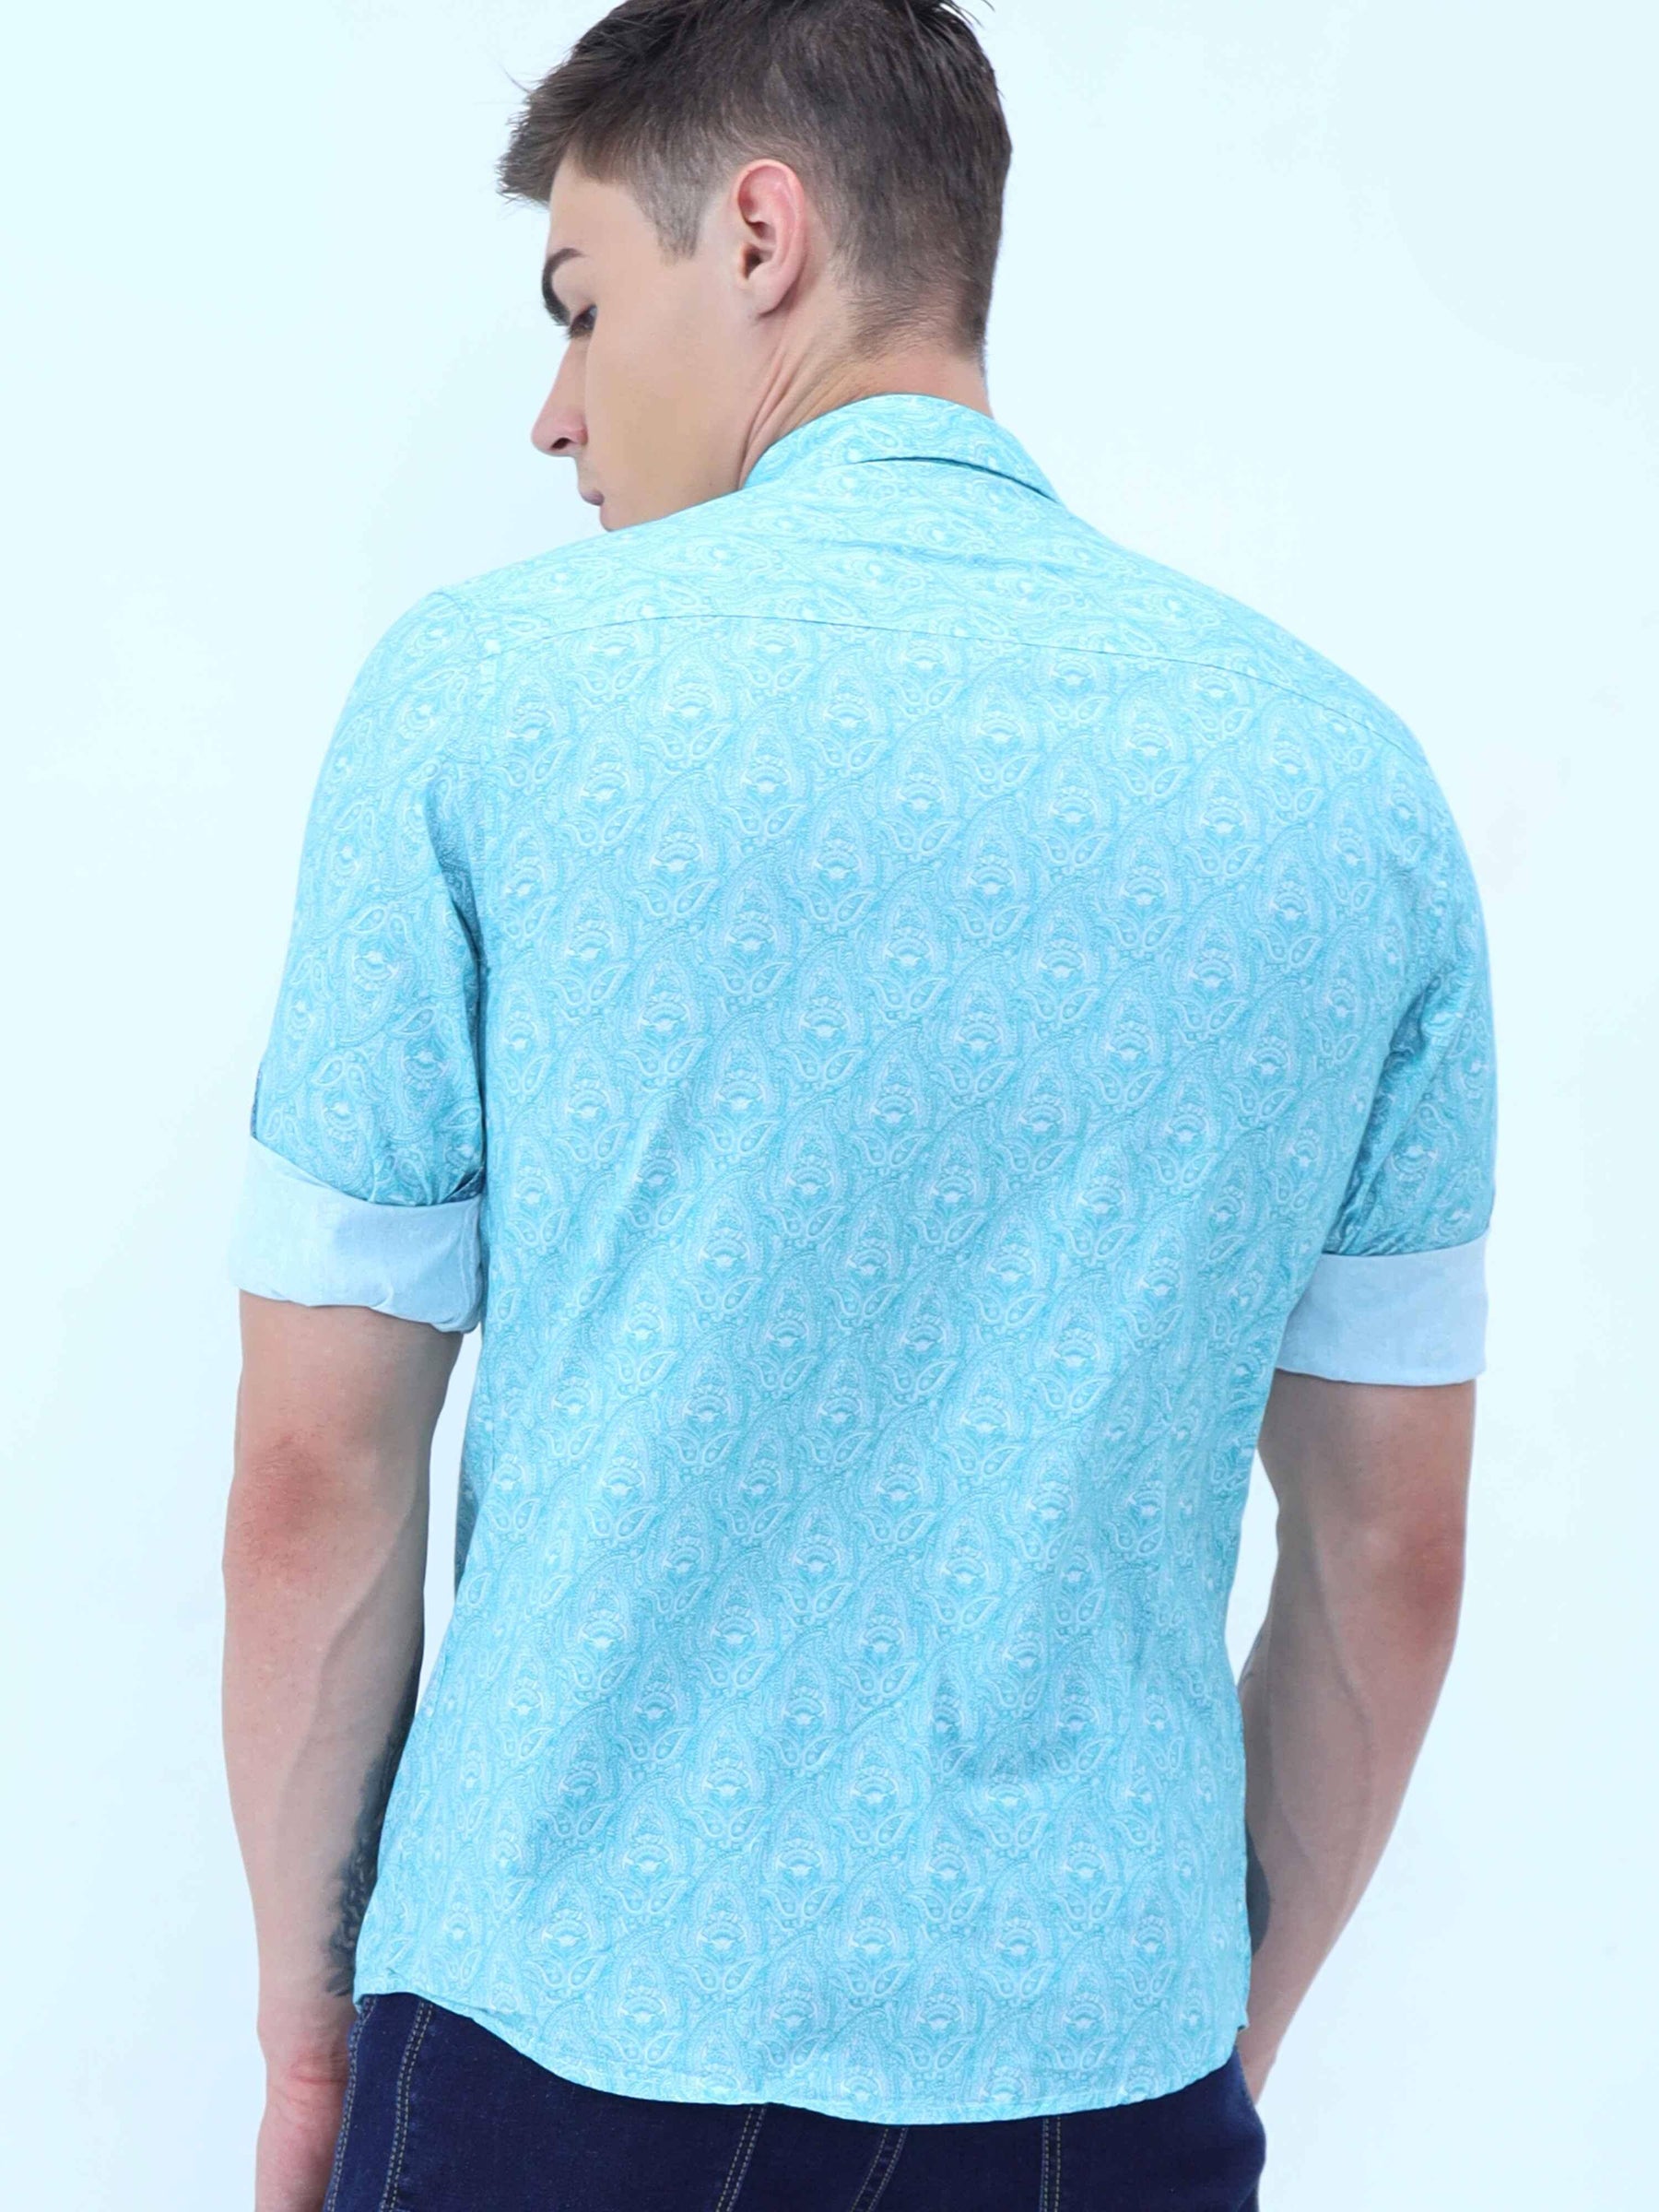 Tiny Paisley Digital Printed Shirt - Guniaa Fashions